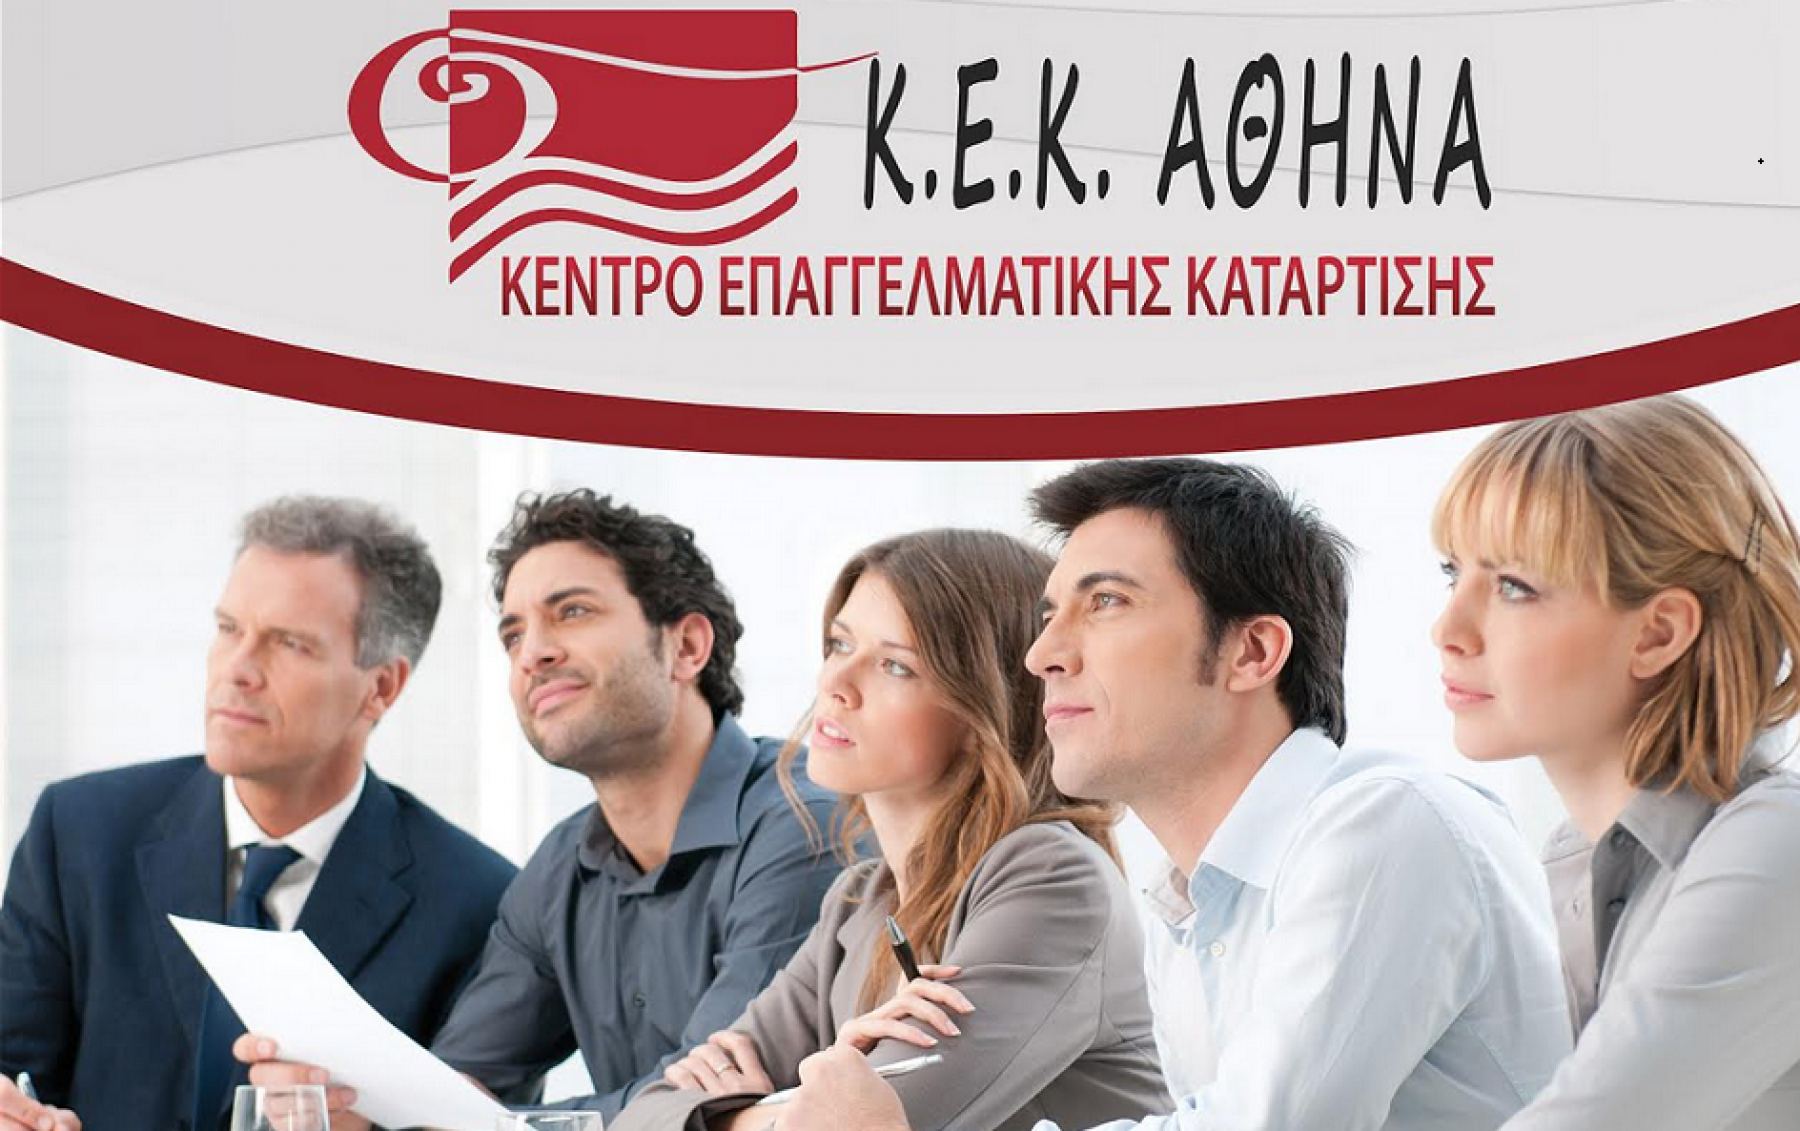 Λαμία: Ενημερώσου για όλα τα νέα προγράμματα και σεμινάρια επαγγελματικής κατάρτισης του «Κεκ Αθηνά»